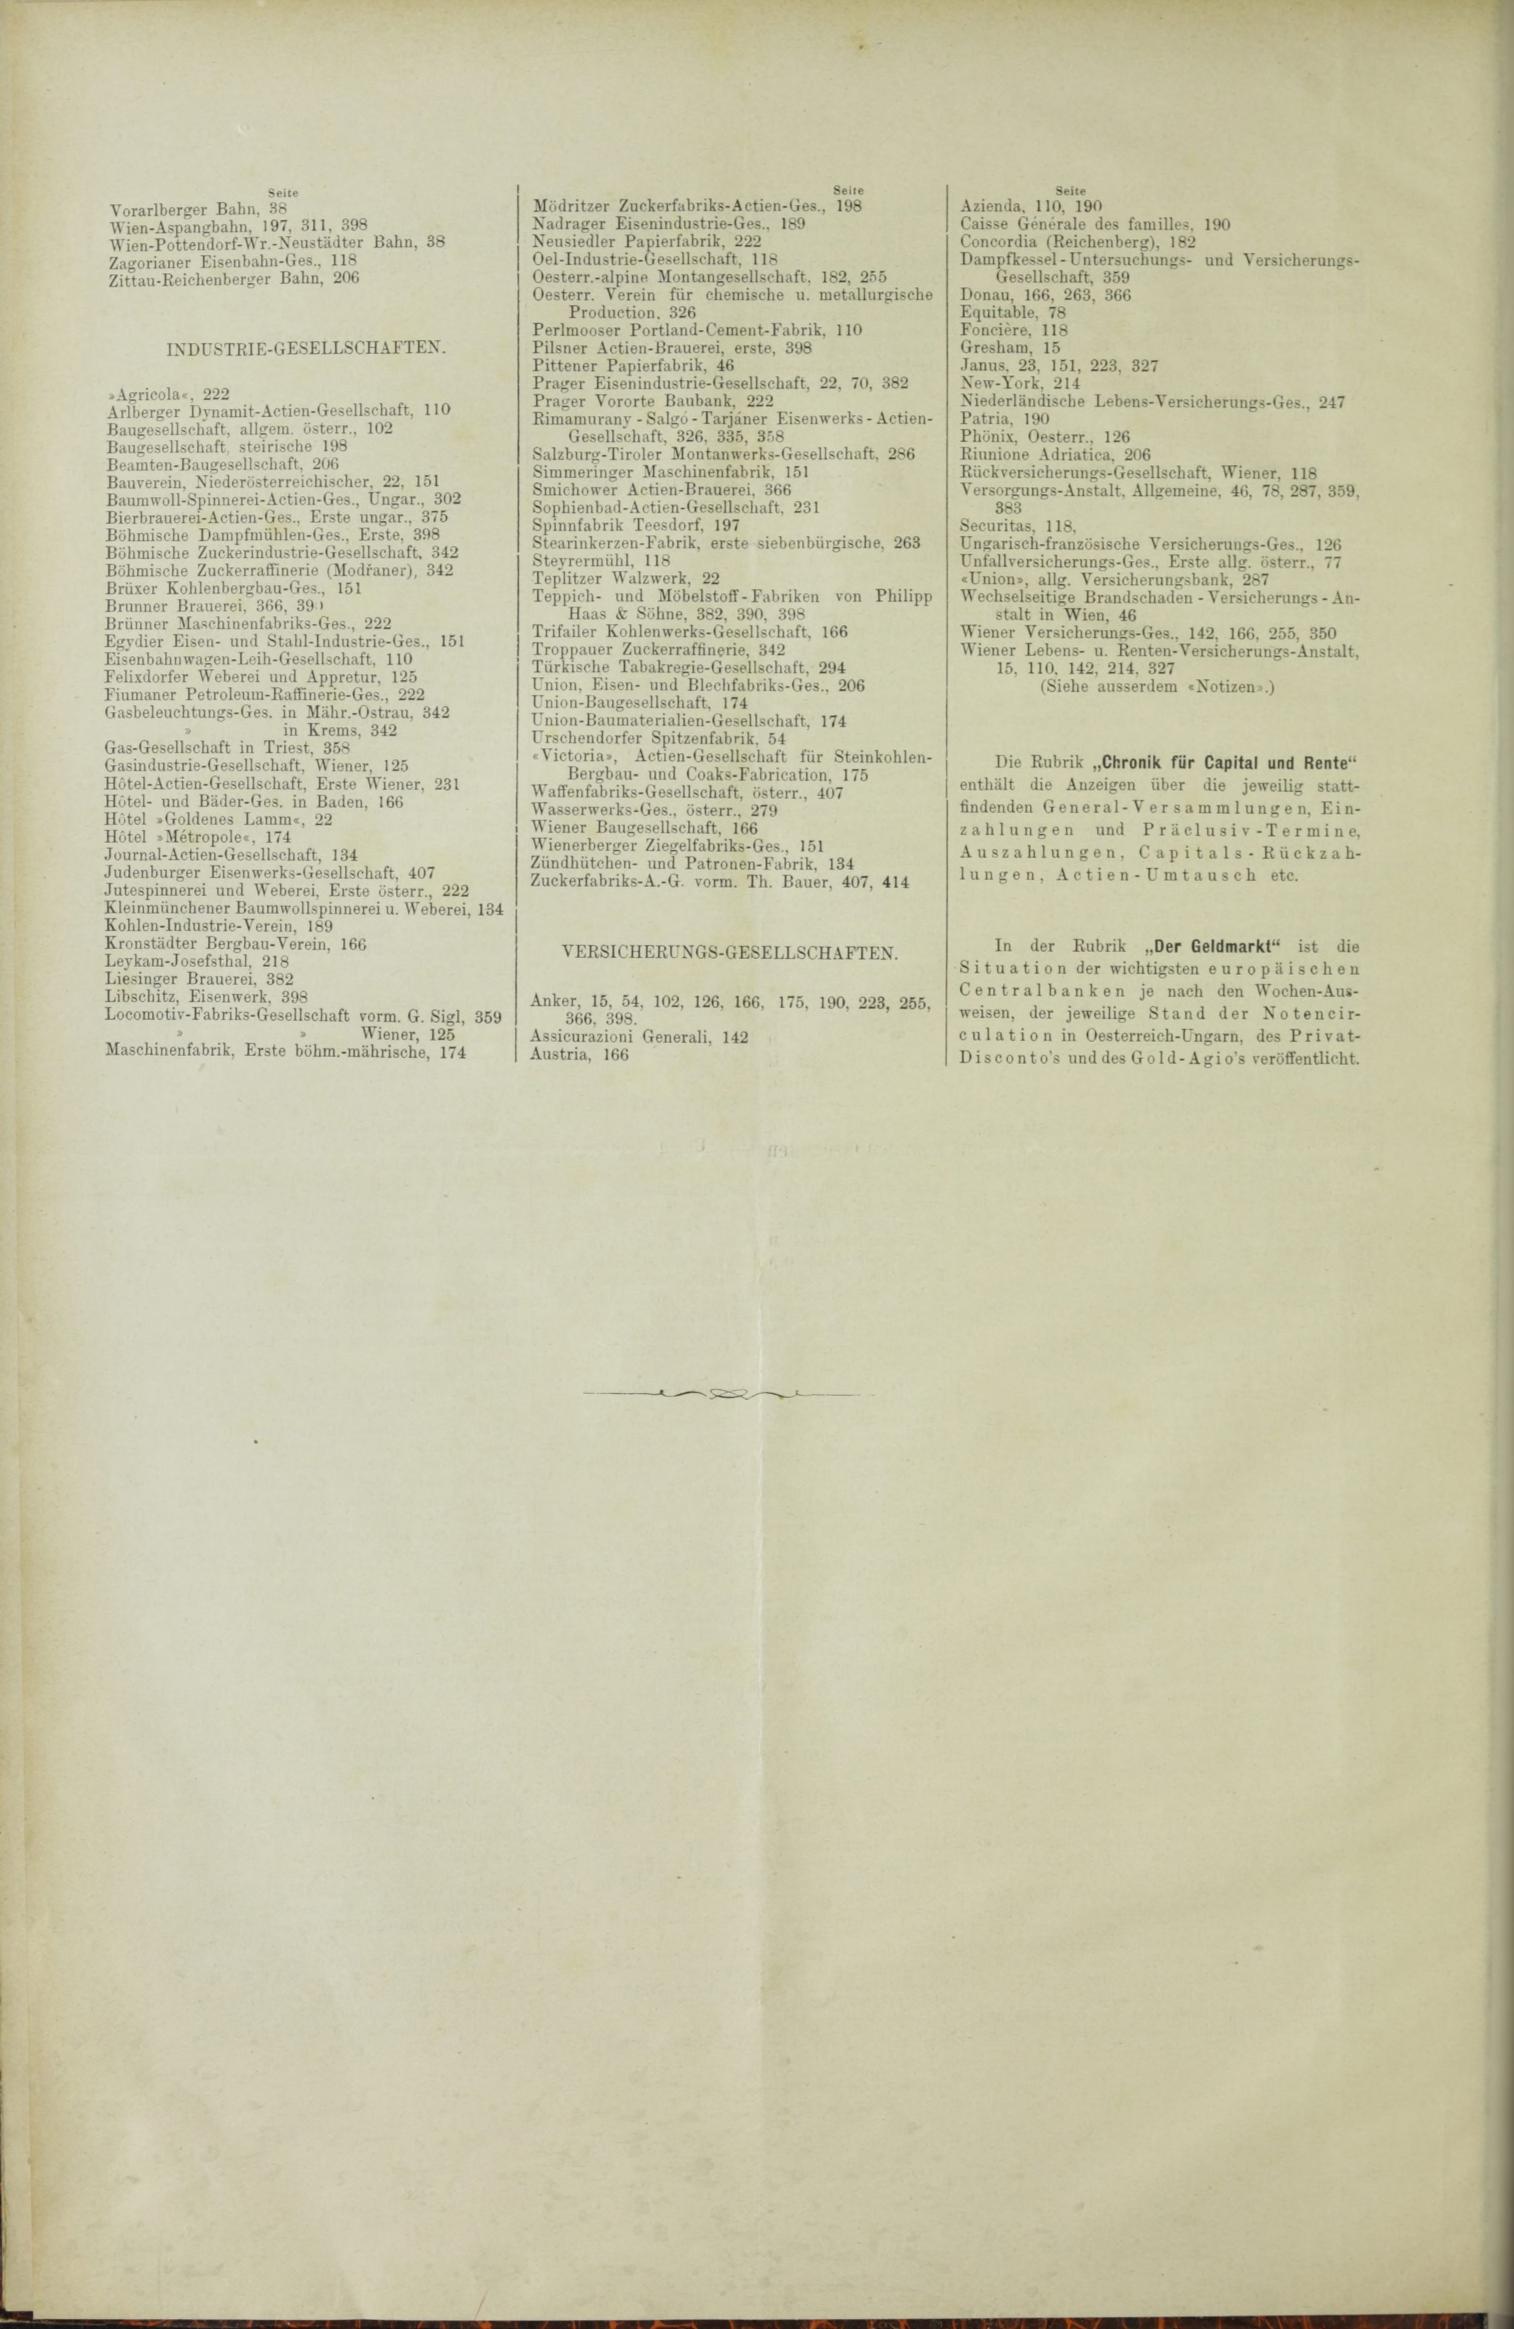 Der Tresor 26.08.1886 - Seite 12